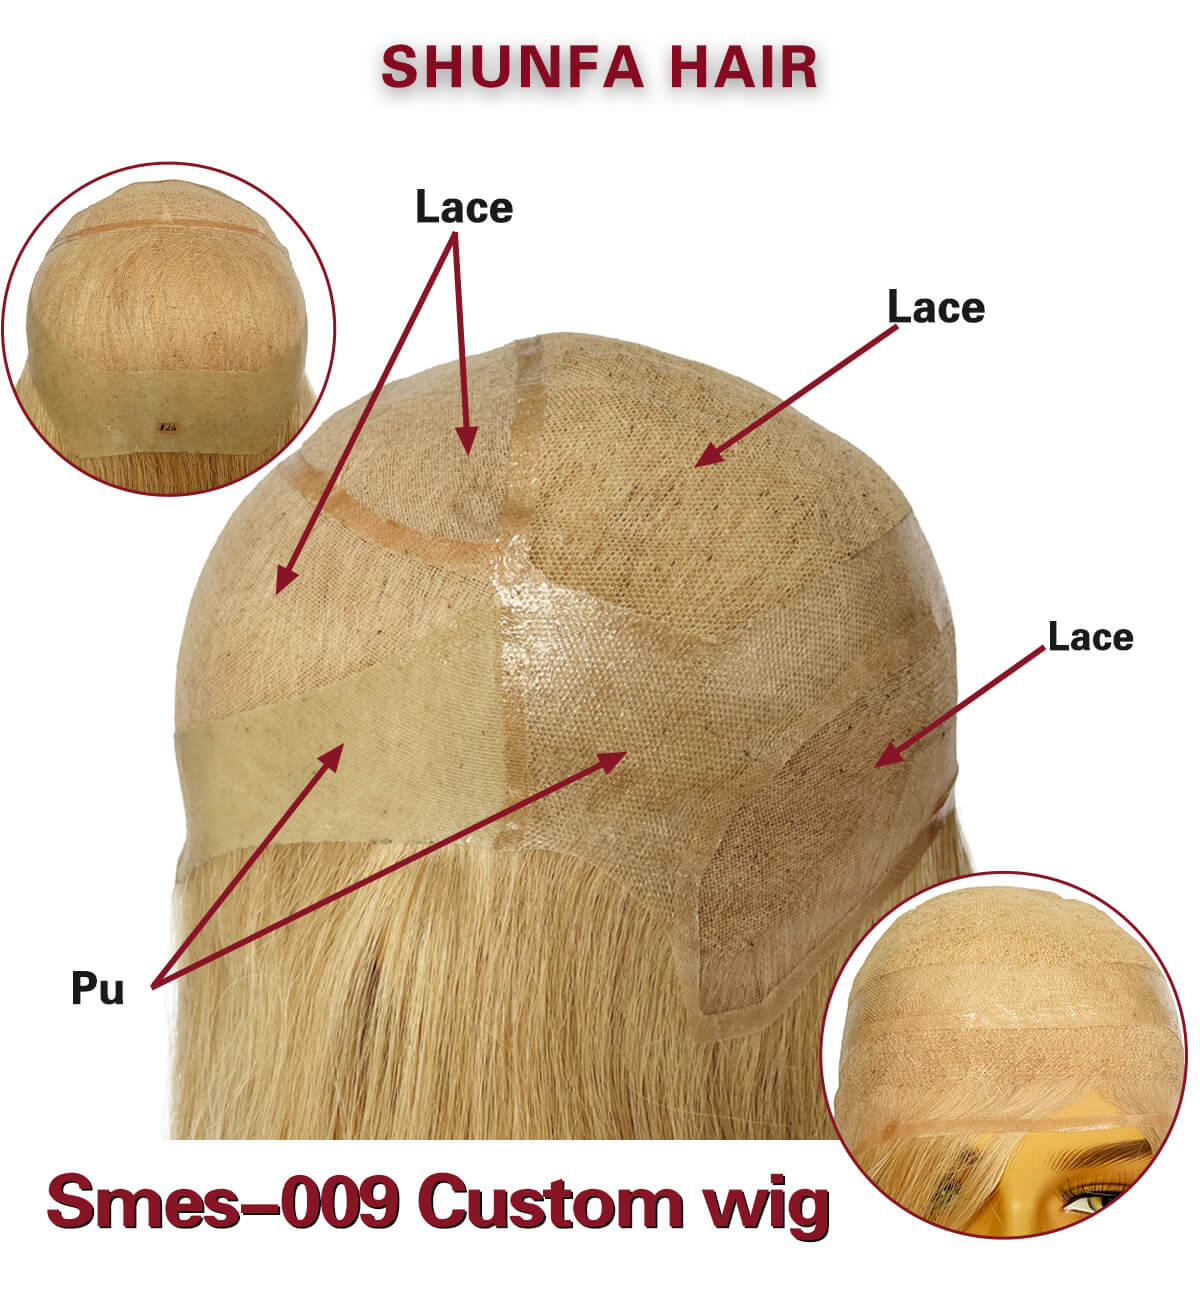 shunfa hair sme 009.png